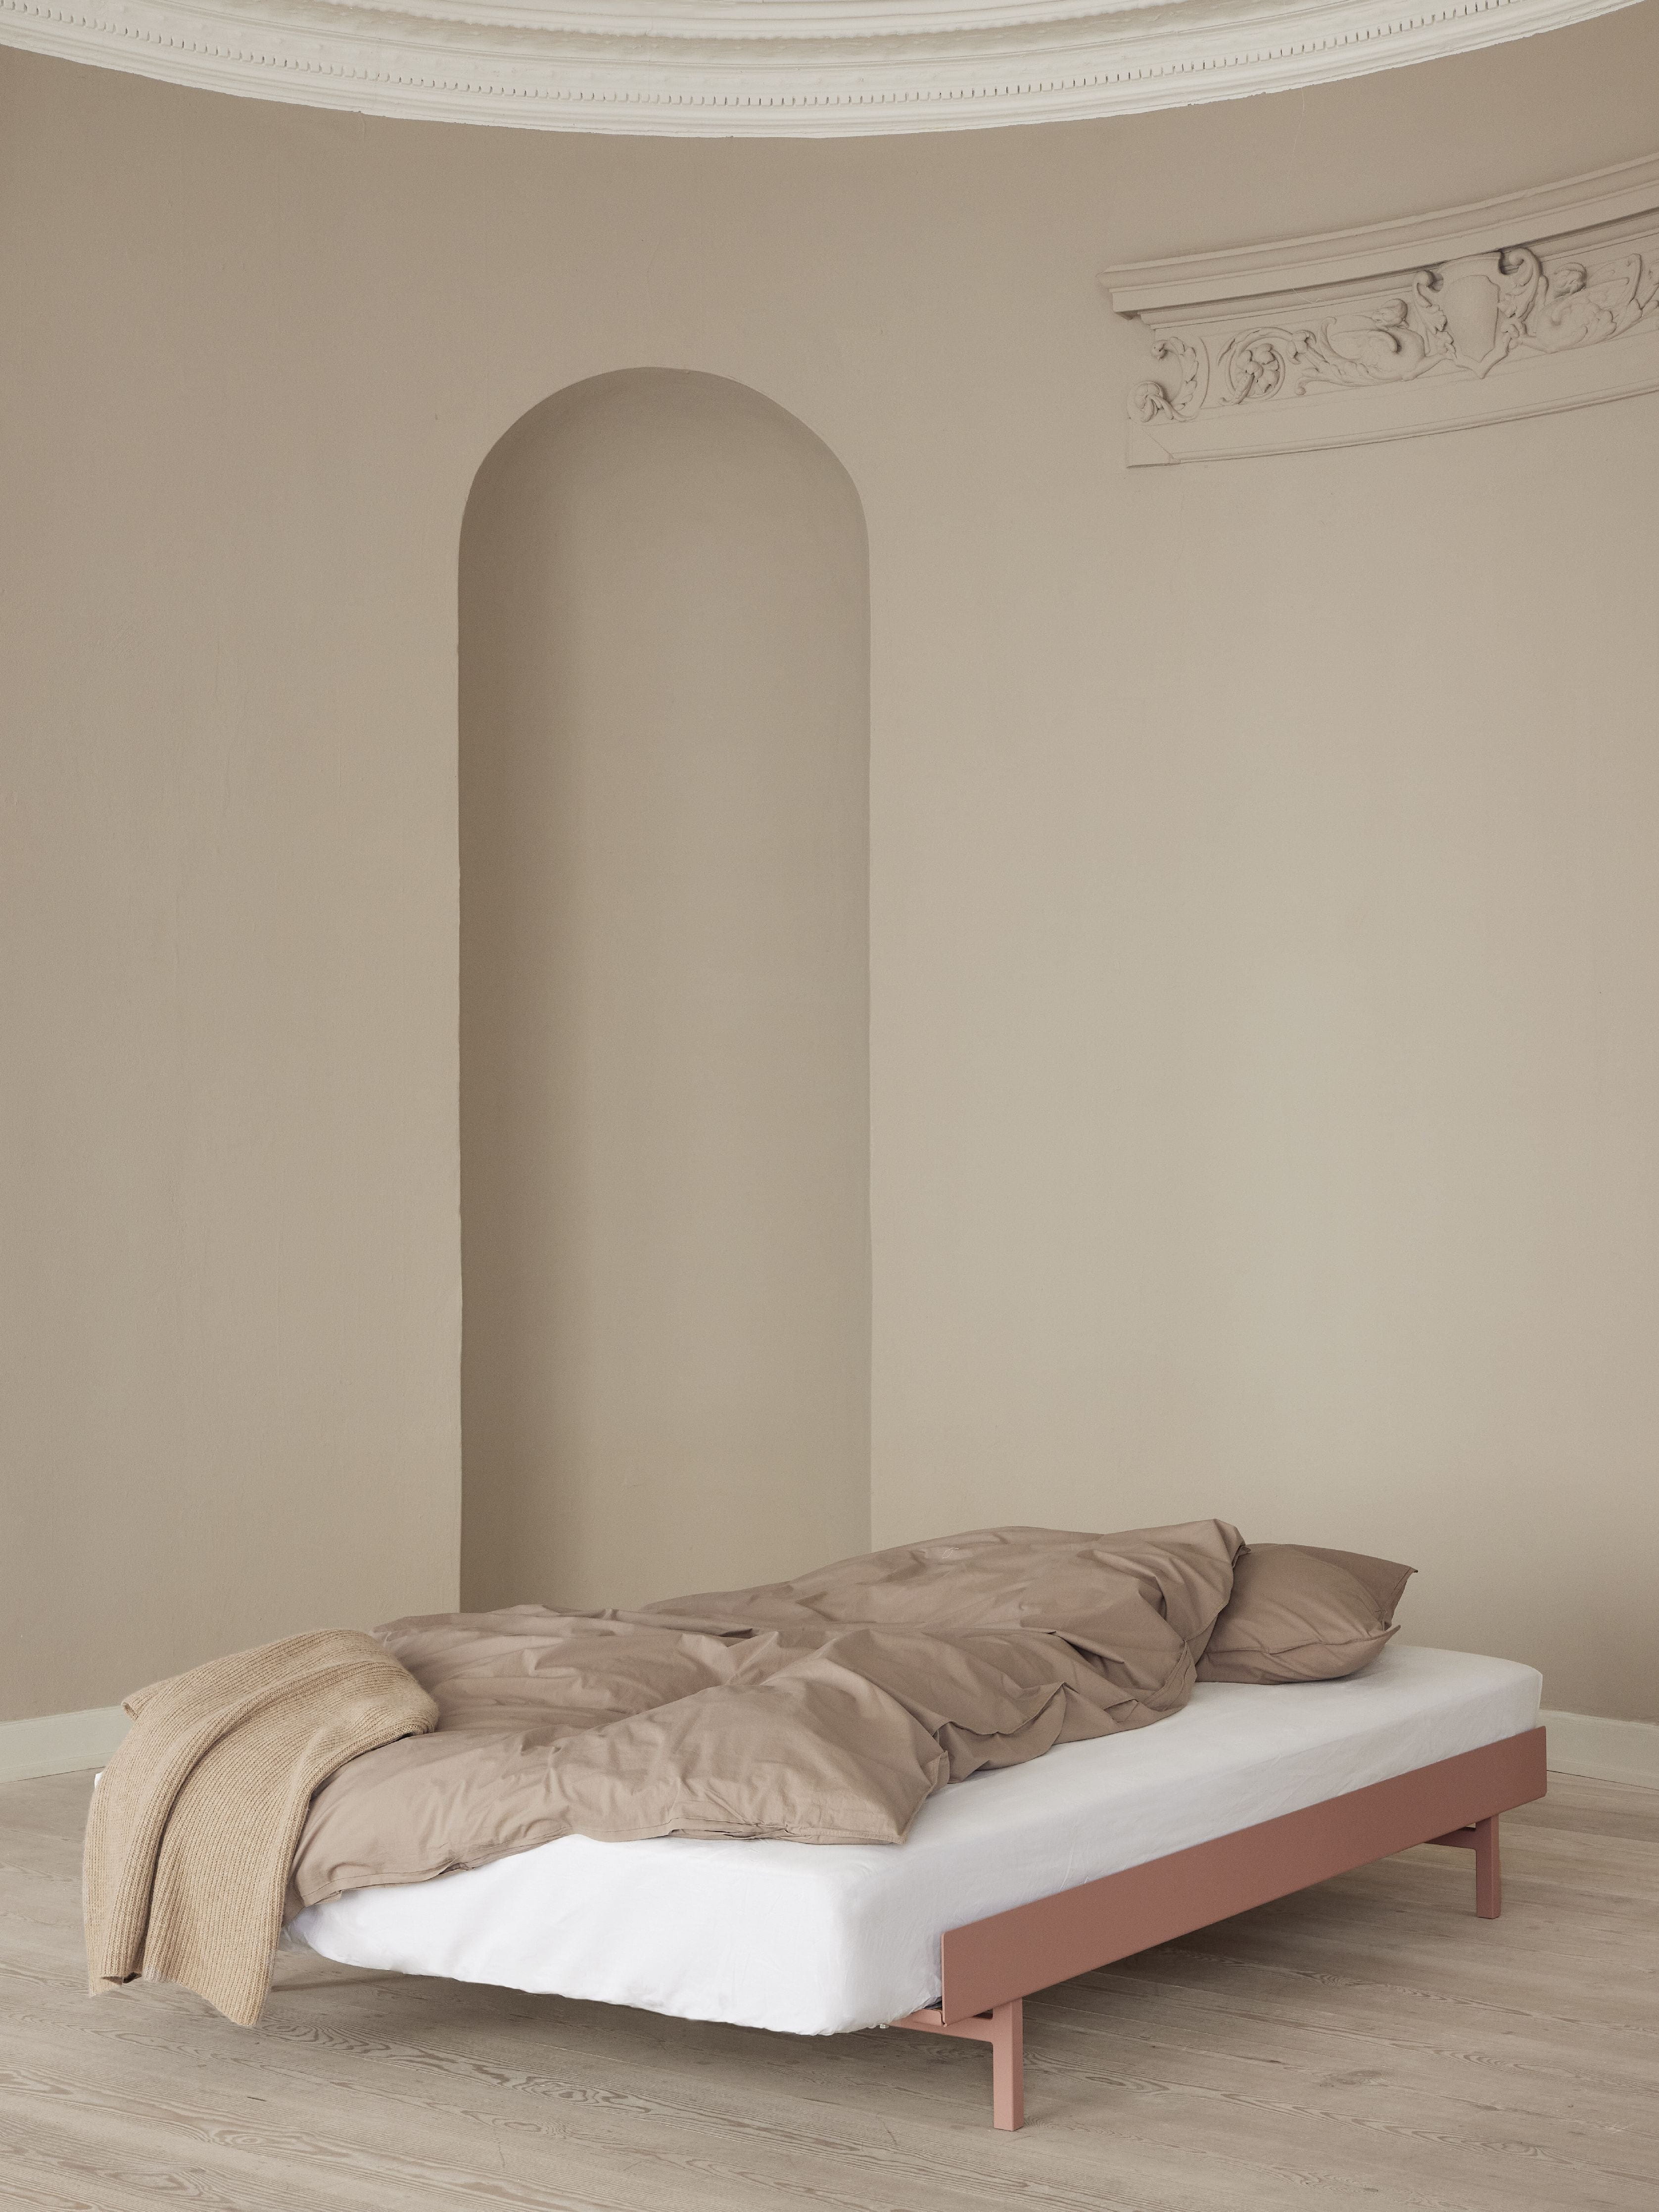 Moebe -Bett mit Bettlatten 160 cm, staubige Rose